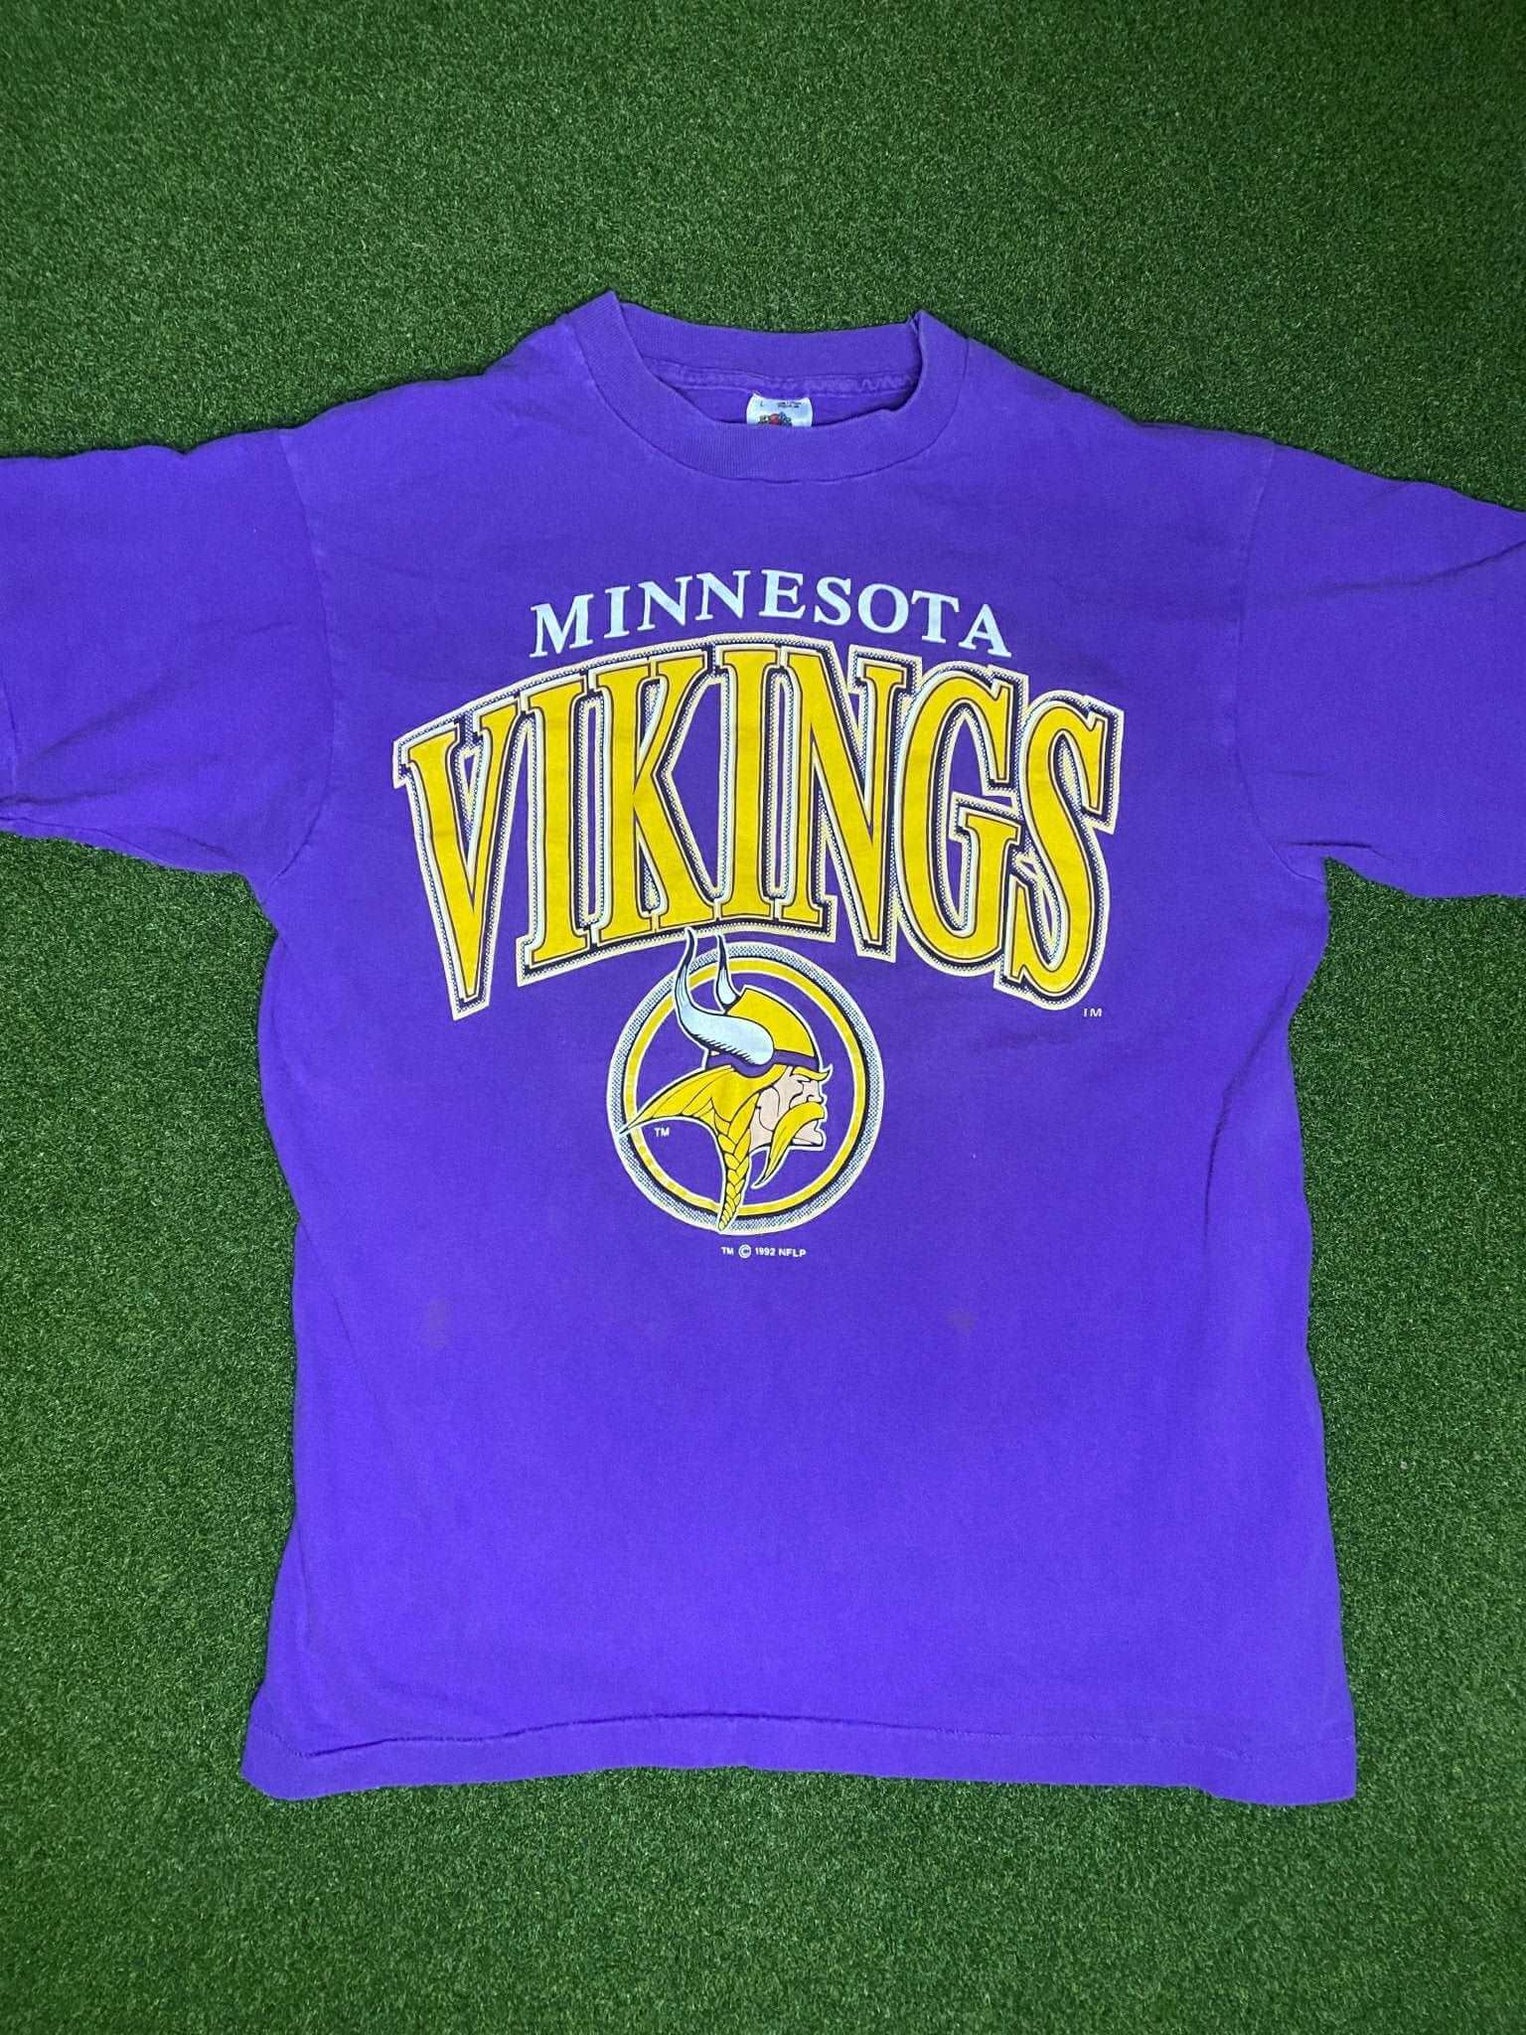 1992 Minnesota Vikings - Vintage NFL Tee Shirt (Large)